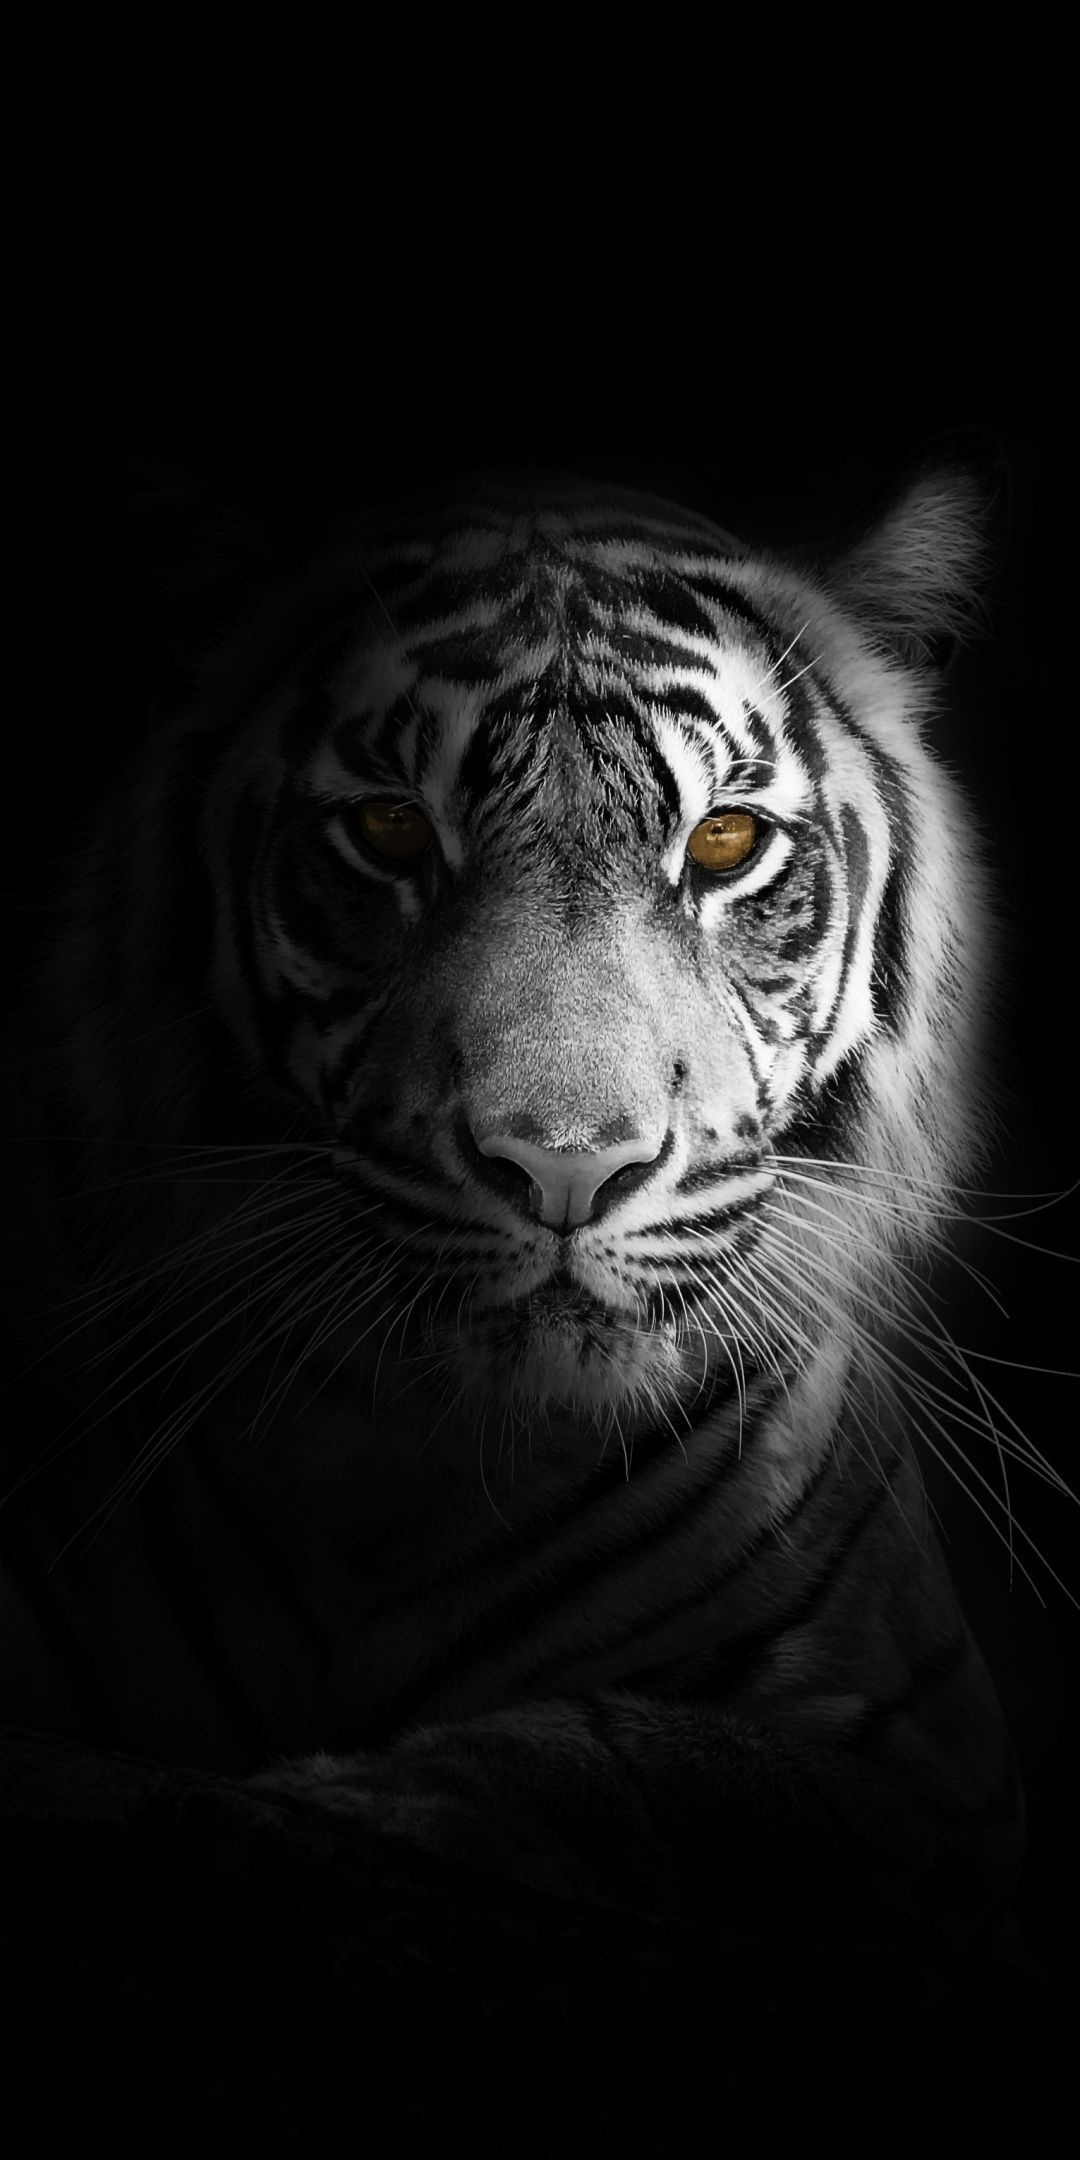 Portrait, minimal, white tiger, dark Wallpaper. Tiger wallpaper, Tiger photography, Wild animal wallpaper